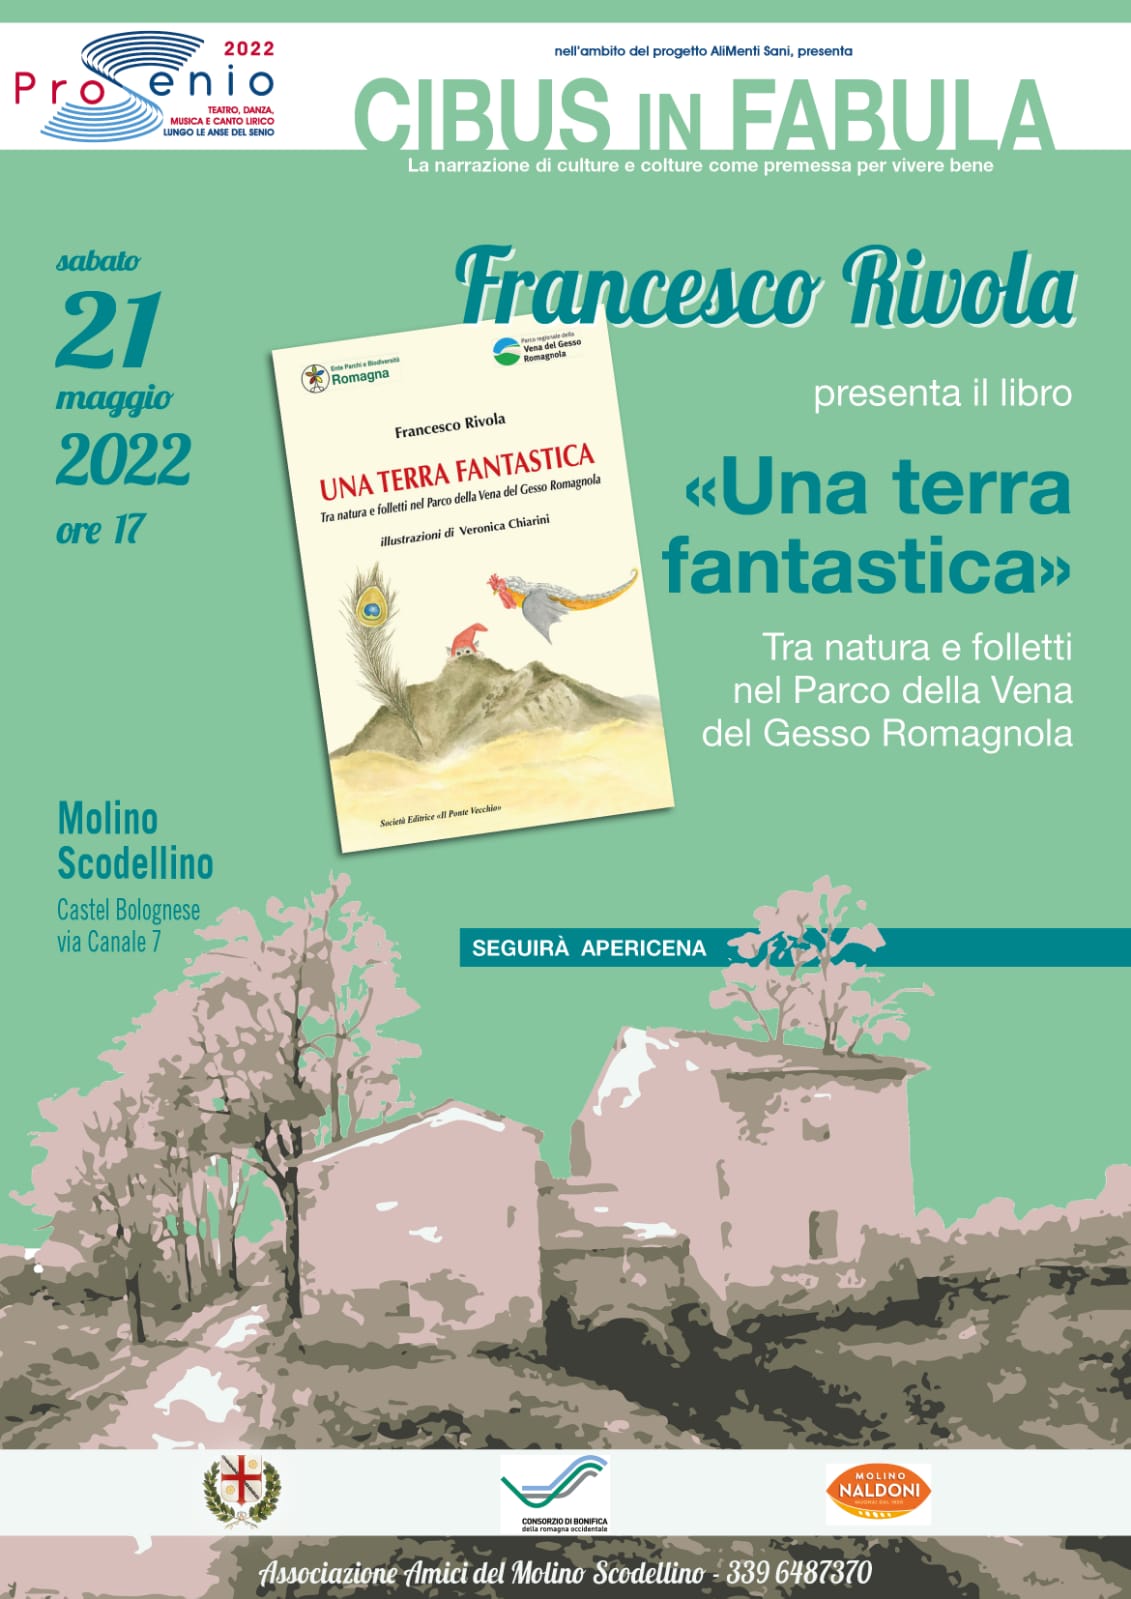 Francesco Rivola presenta il libro 'Una terra fantastica' presso la manifestazione Cibus in Fabula